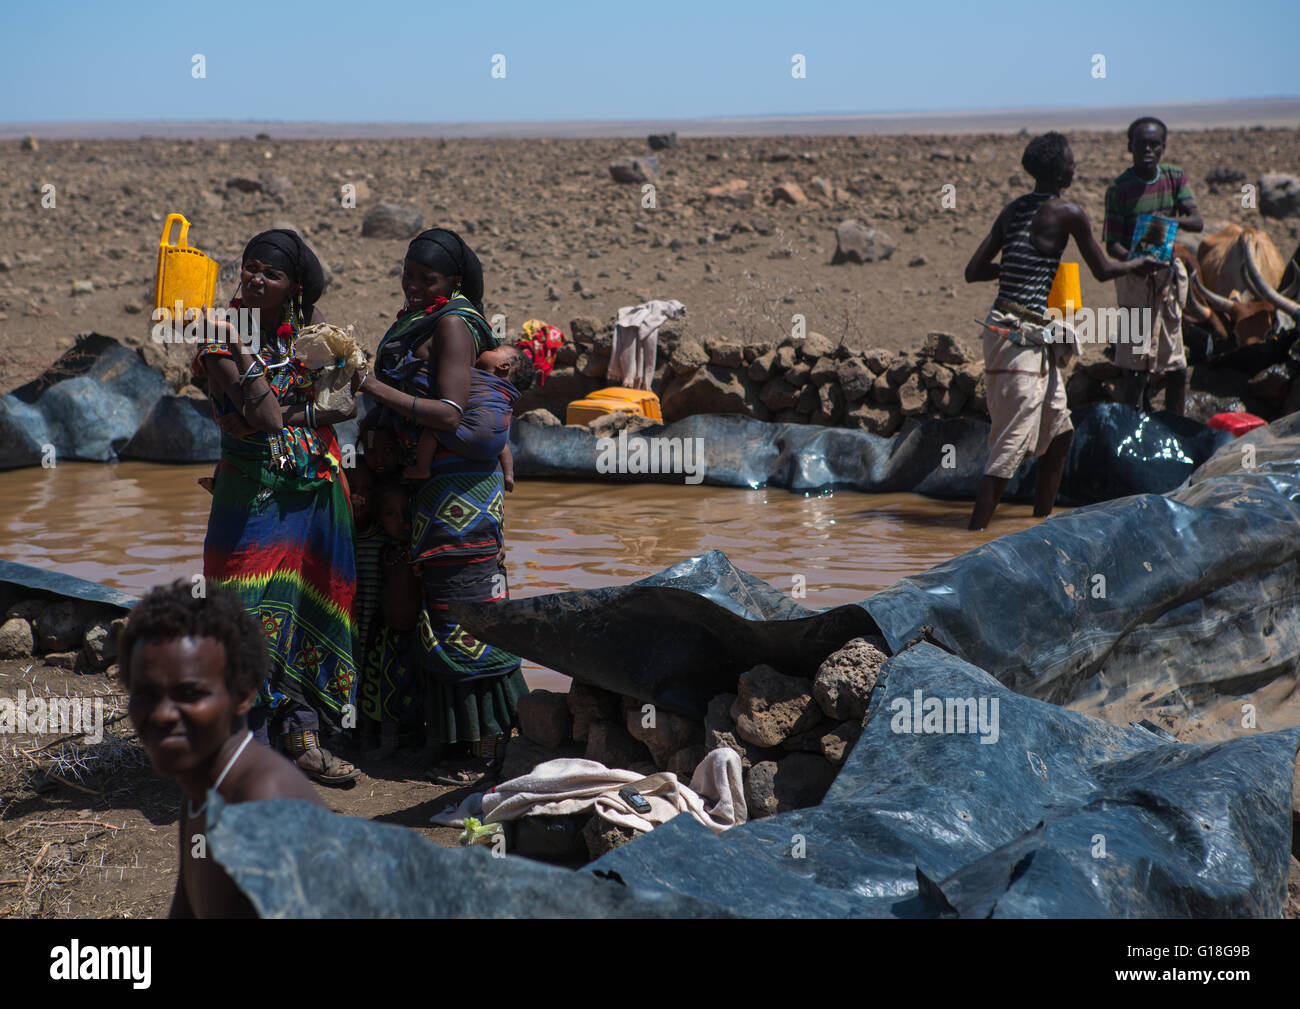 El pueblo somalí para recoger el agua de un tanque en el desierto, la región de Afar, parque nacional Yangudi rassa, Etiopía Foto de stock